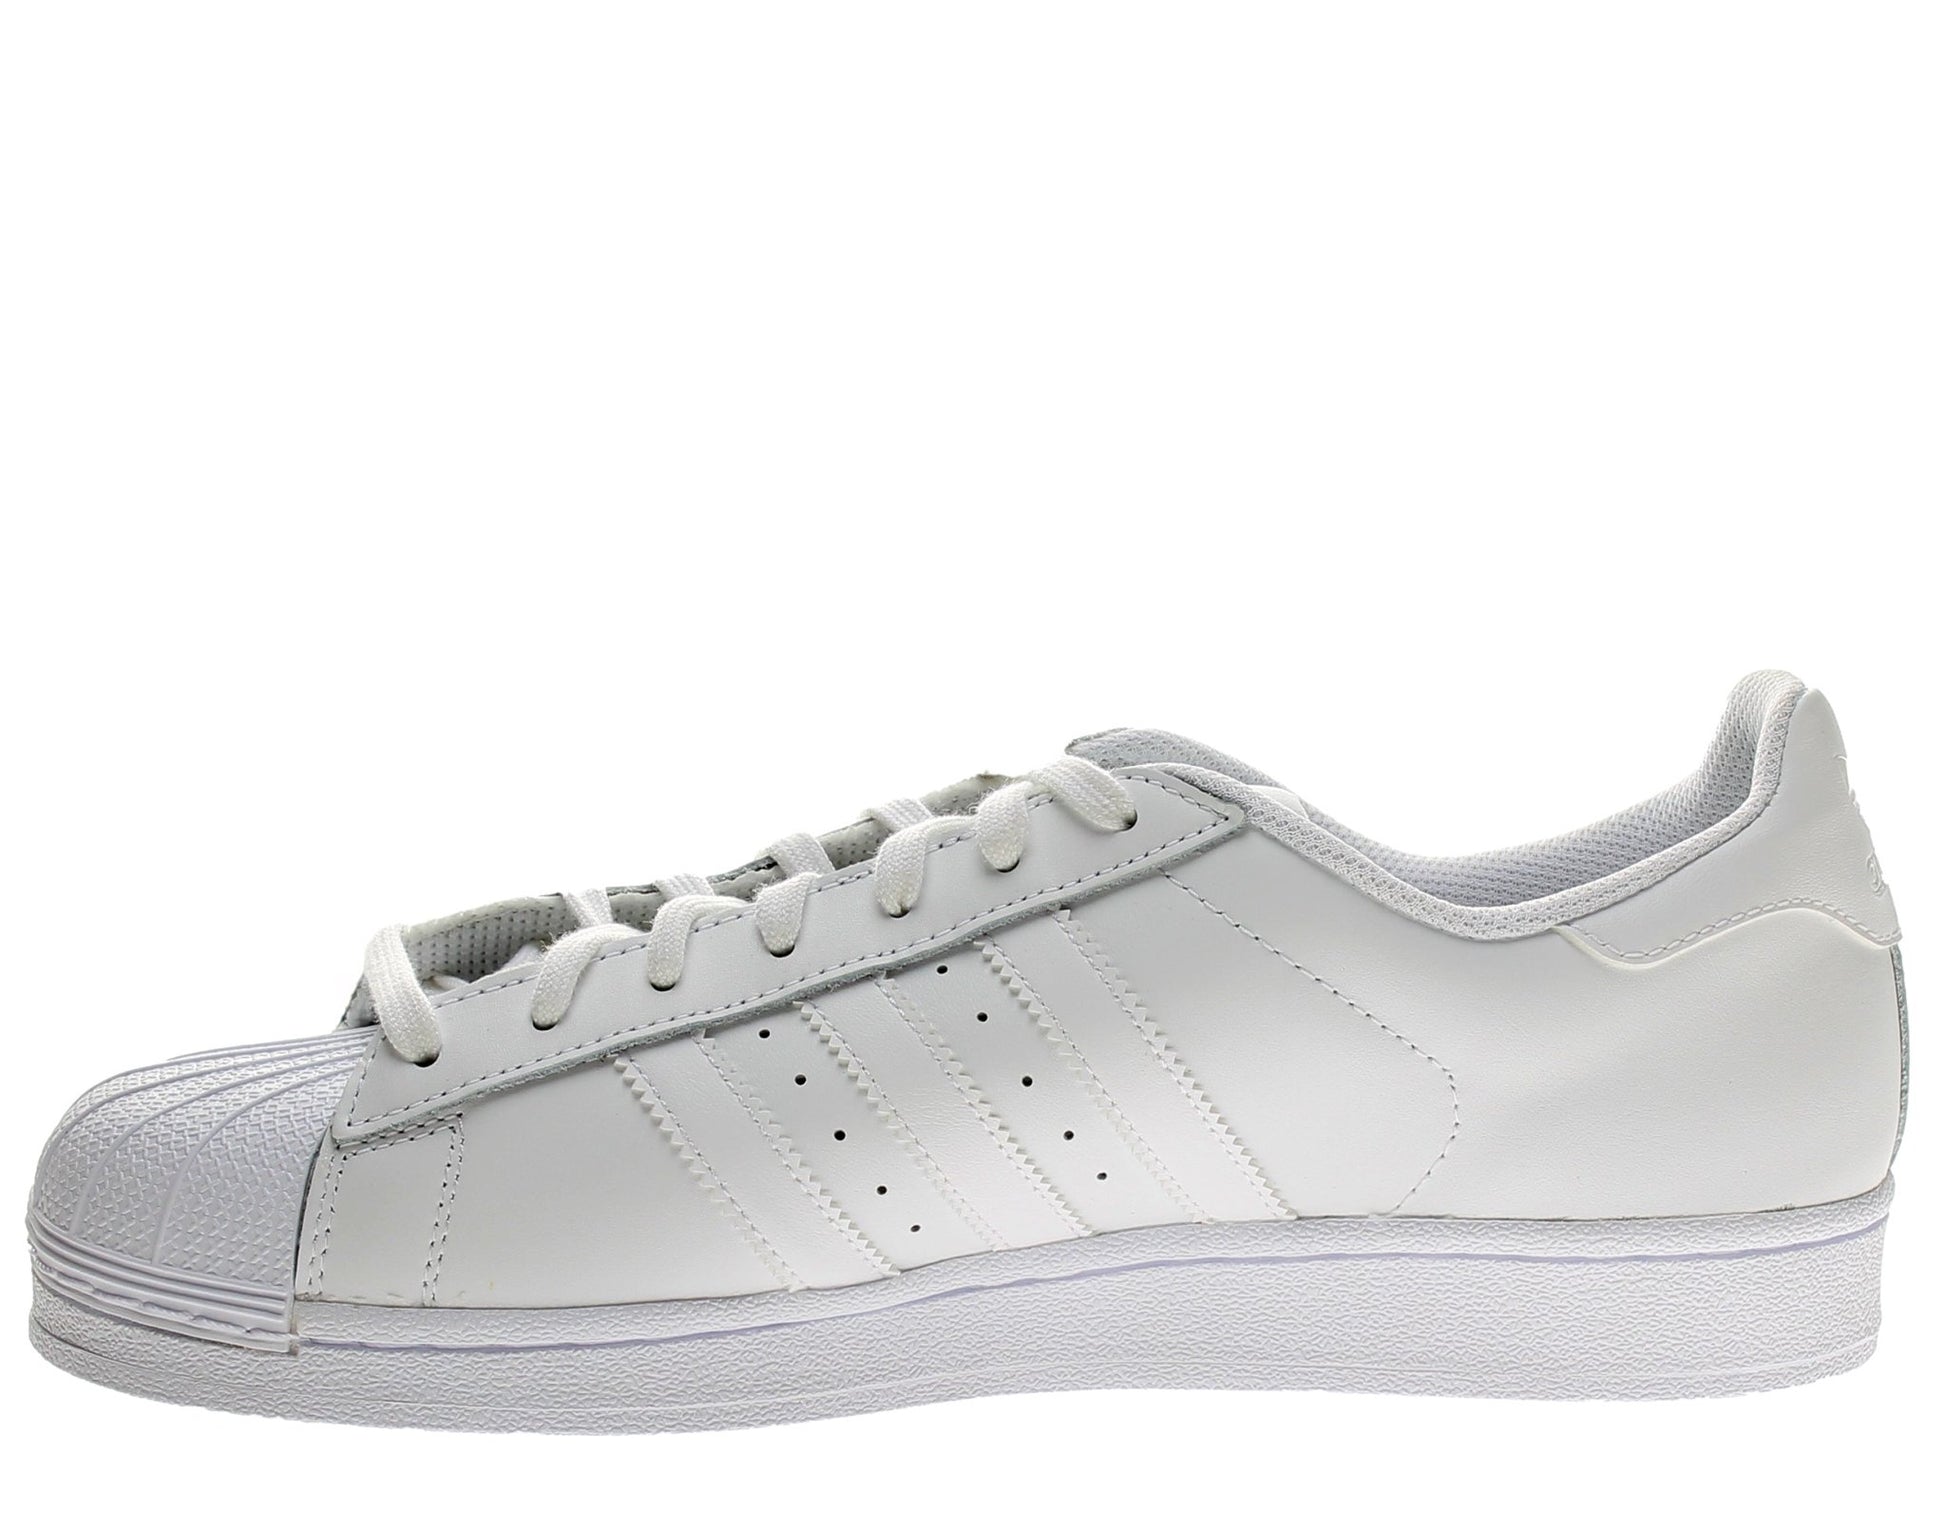 Adidas Originals Superstar Foundation White/White Men's Basketball Shoes B27136 - Becauze